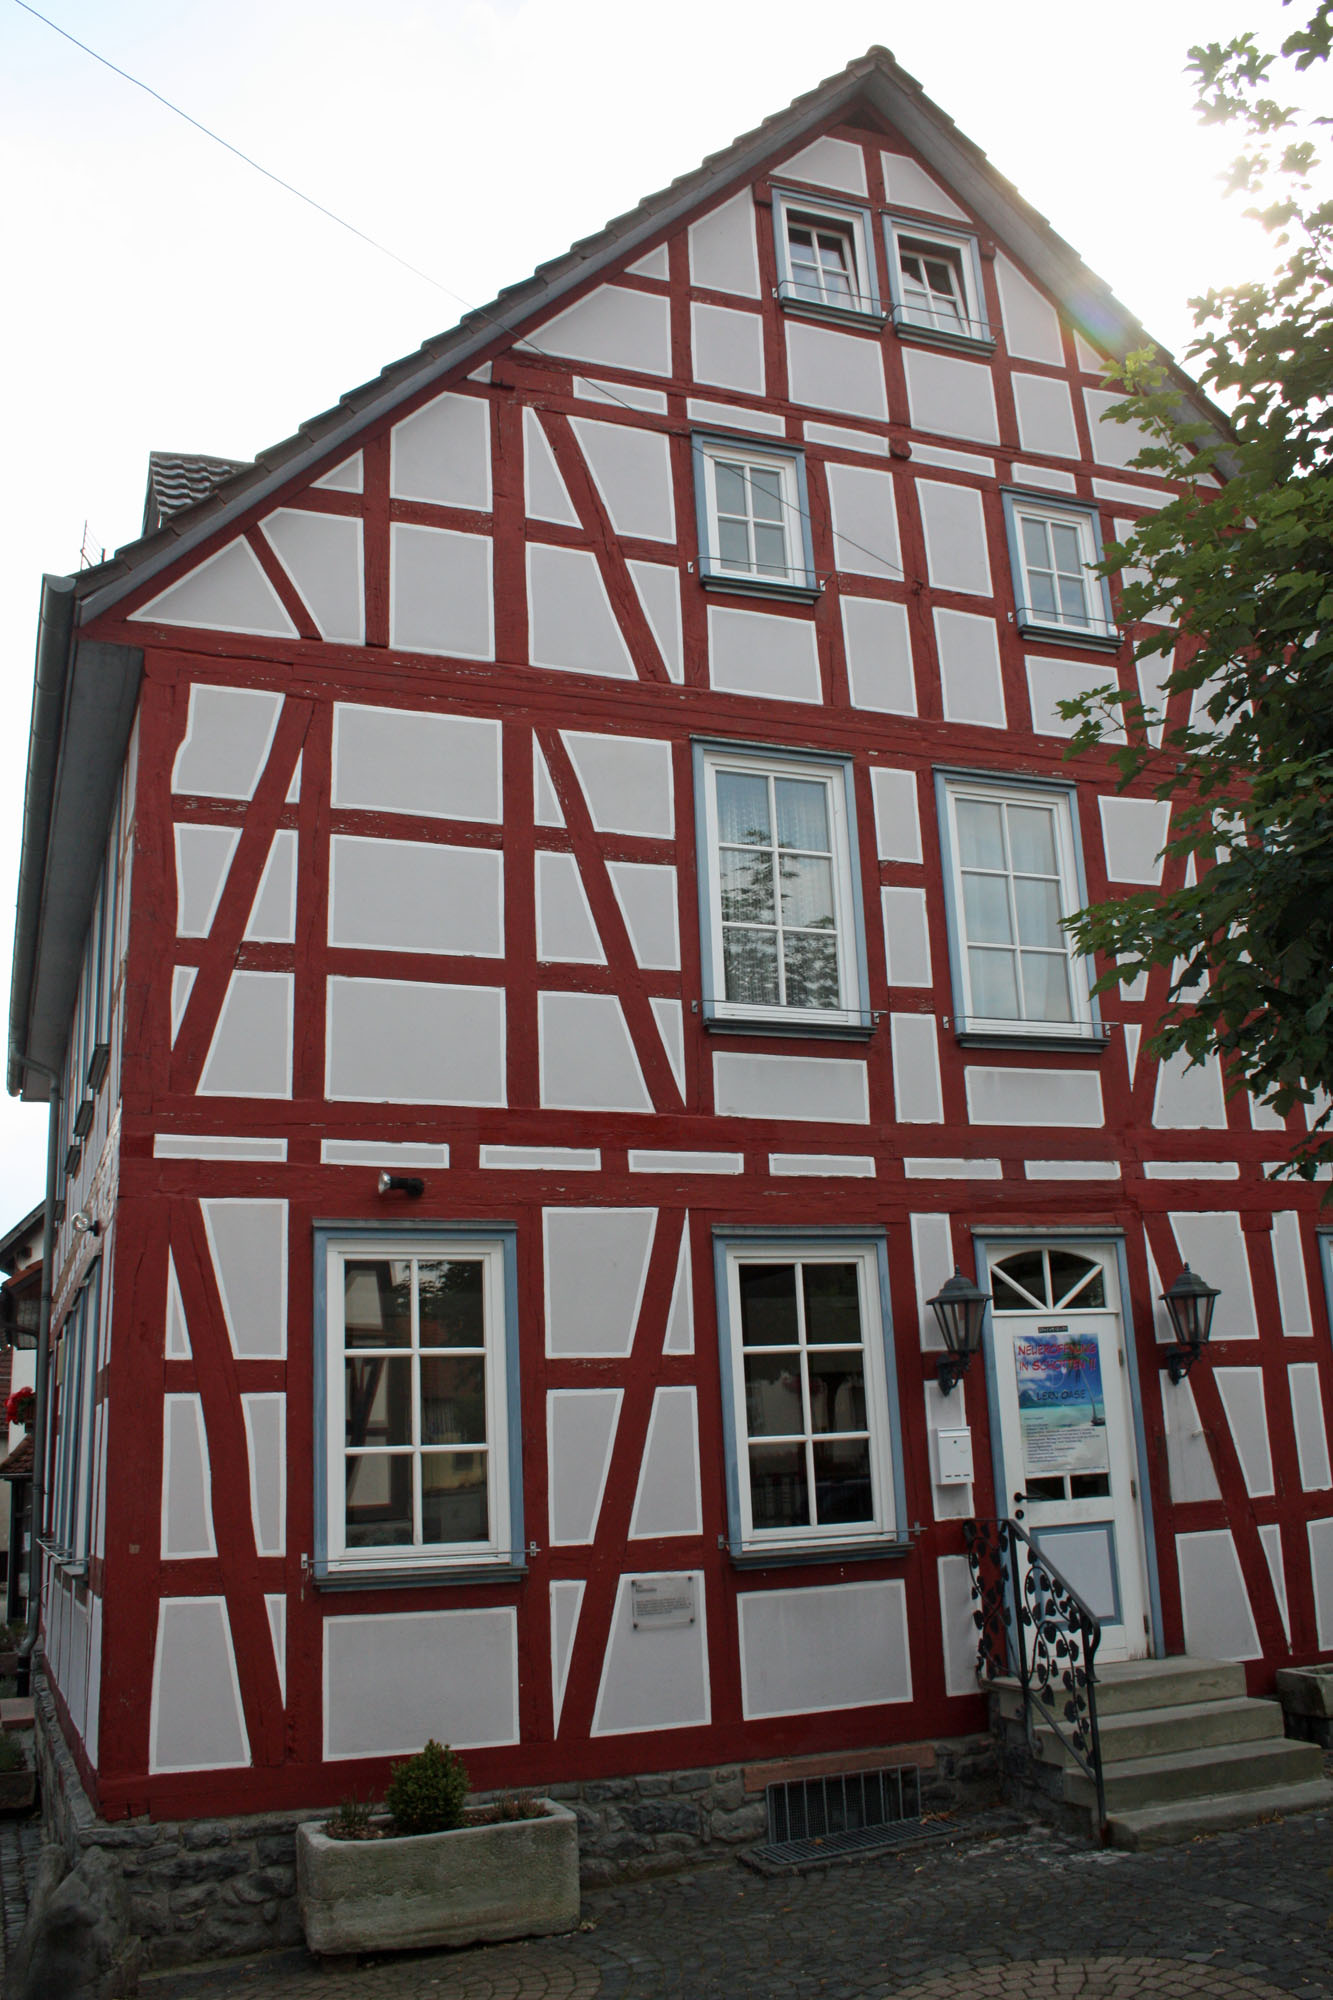 Stadtmühle.
